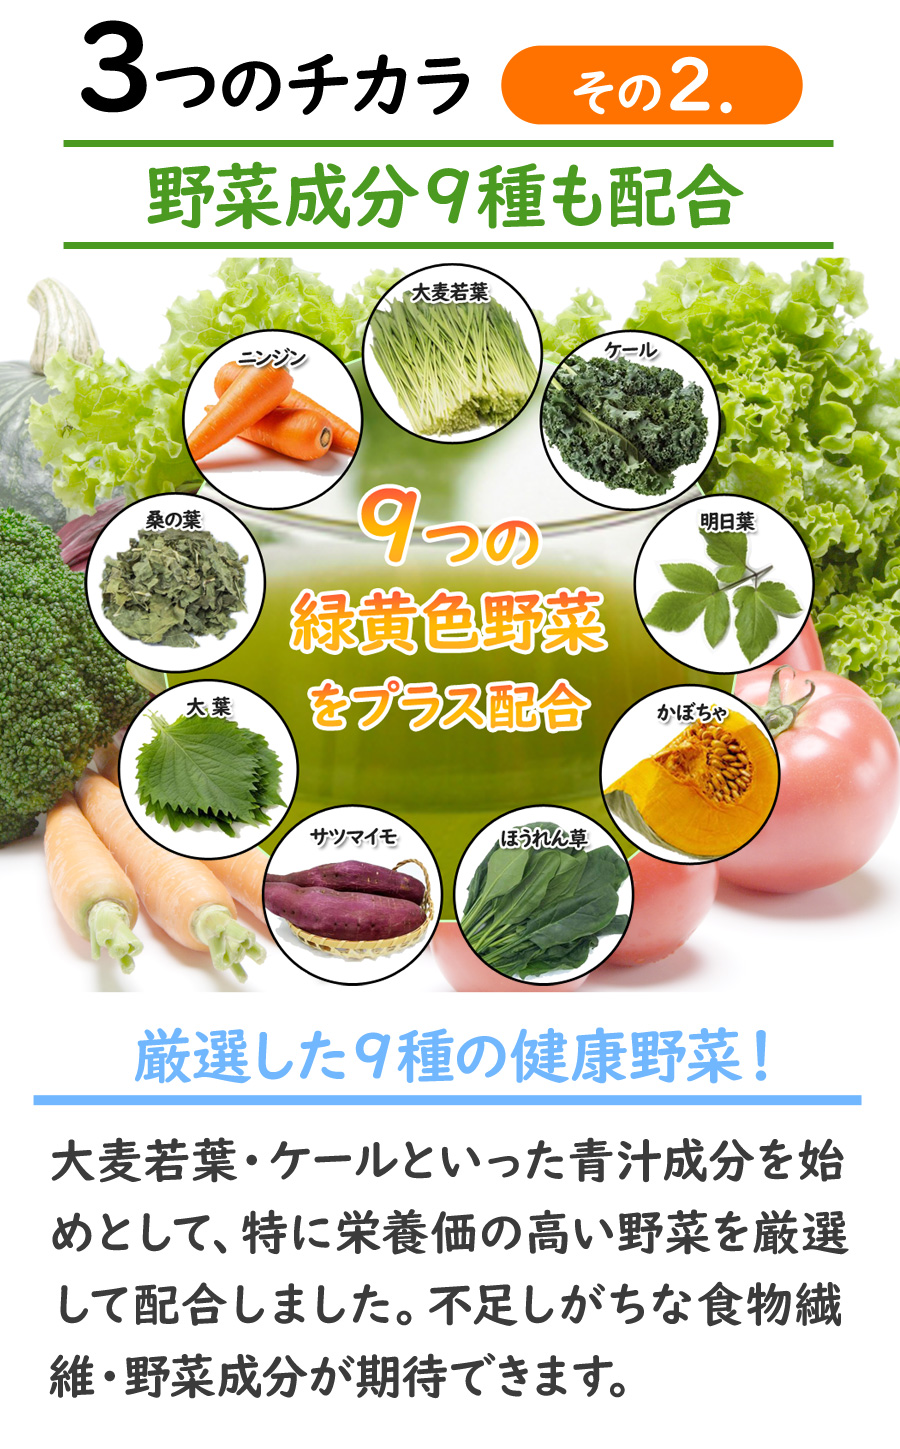 3つのチカラその2.野菜成分9種を配合 9つの緑黄色野菜をプラス配合 厳選した9種の健康野菜